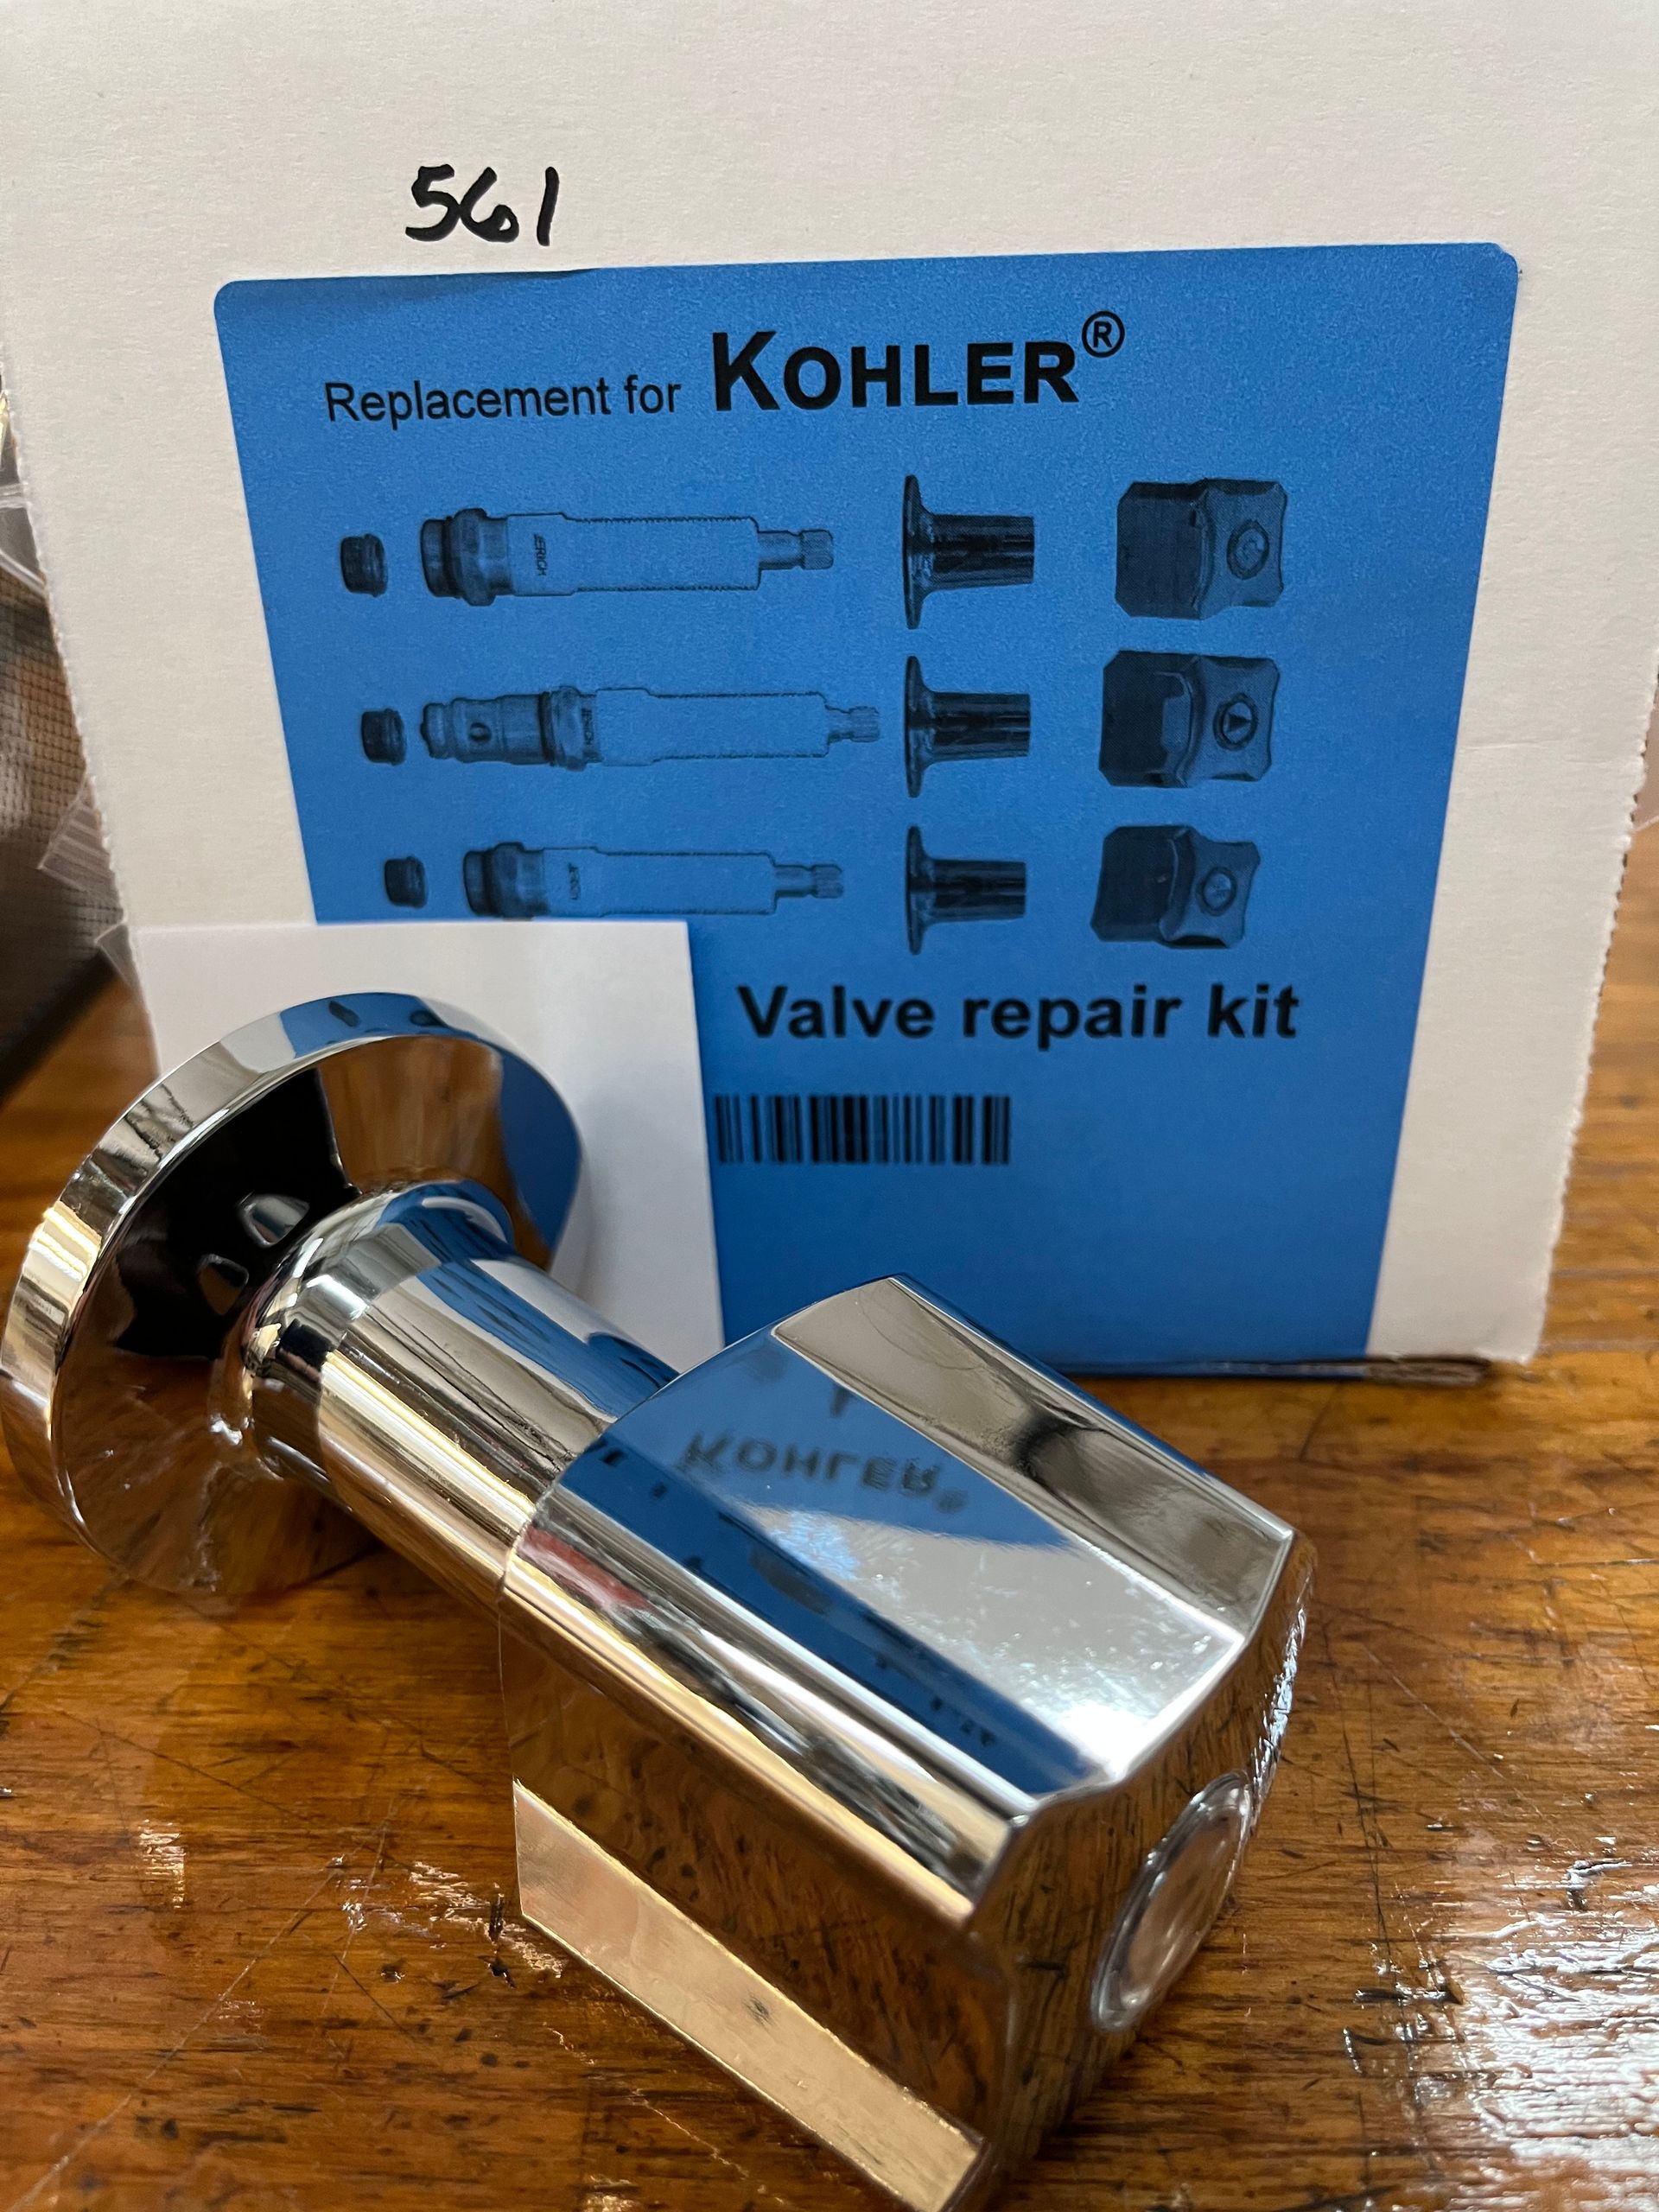 Valve repair kit